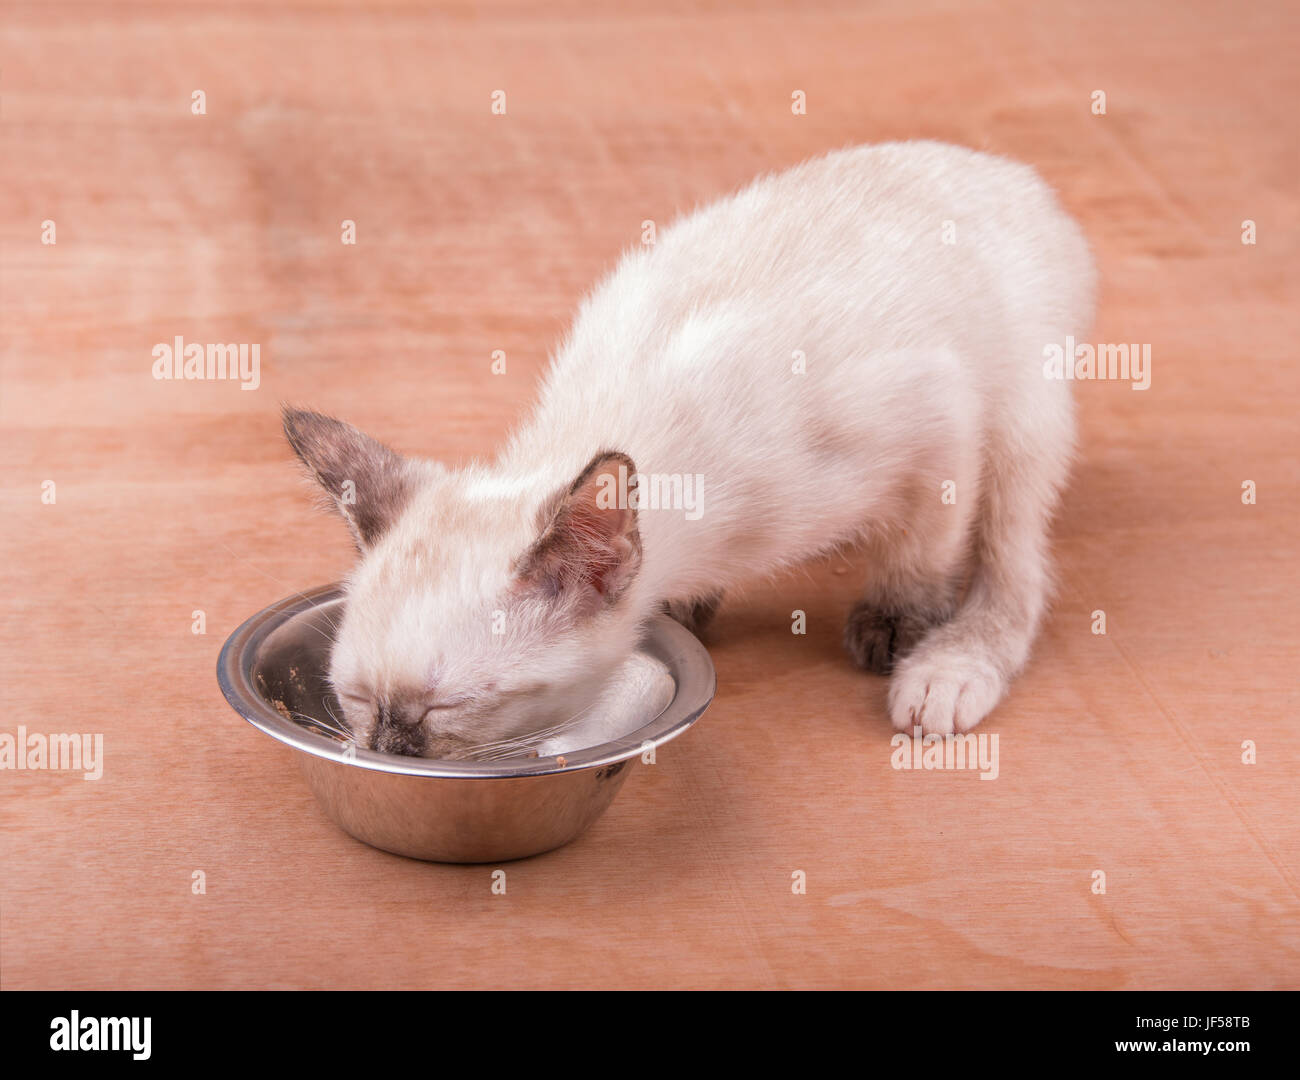 Petite tortie point Siamese kitten manger à partir d'un bol en argent Banque D'Images